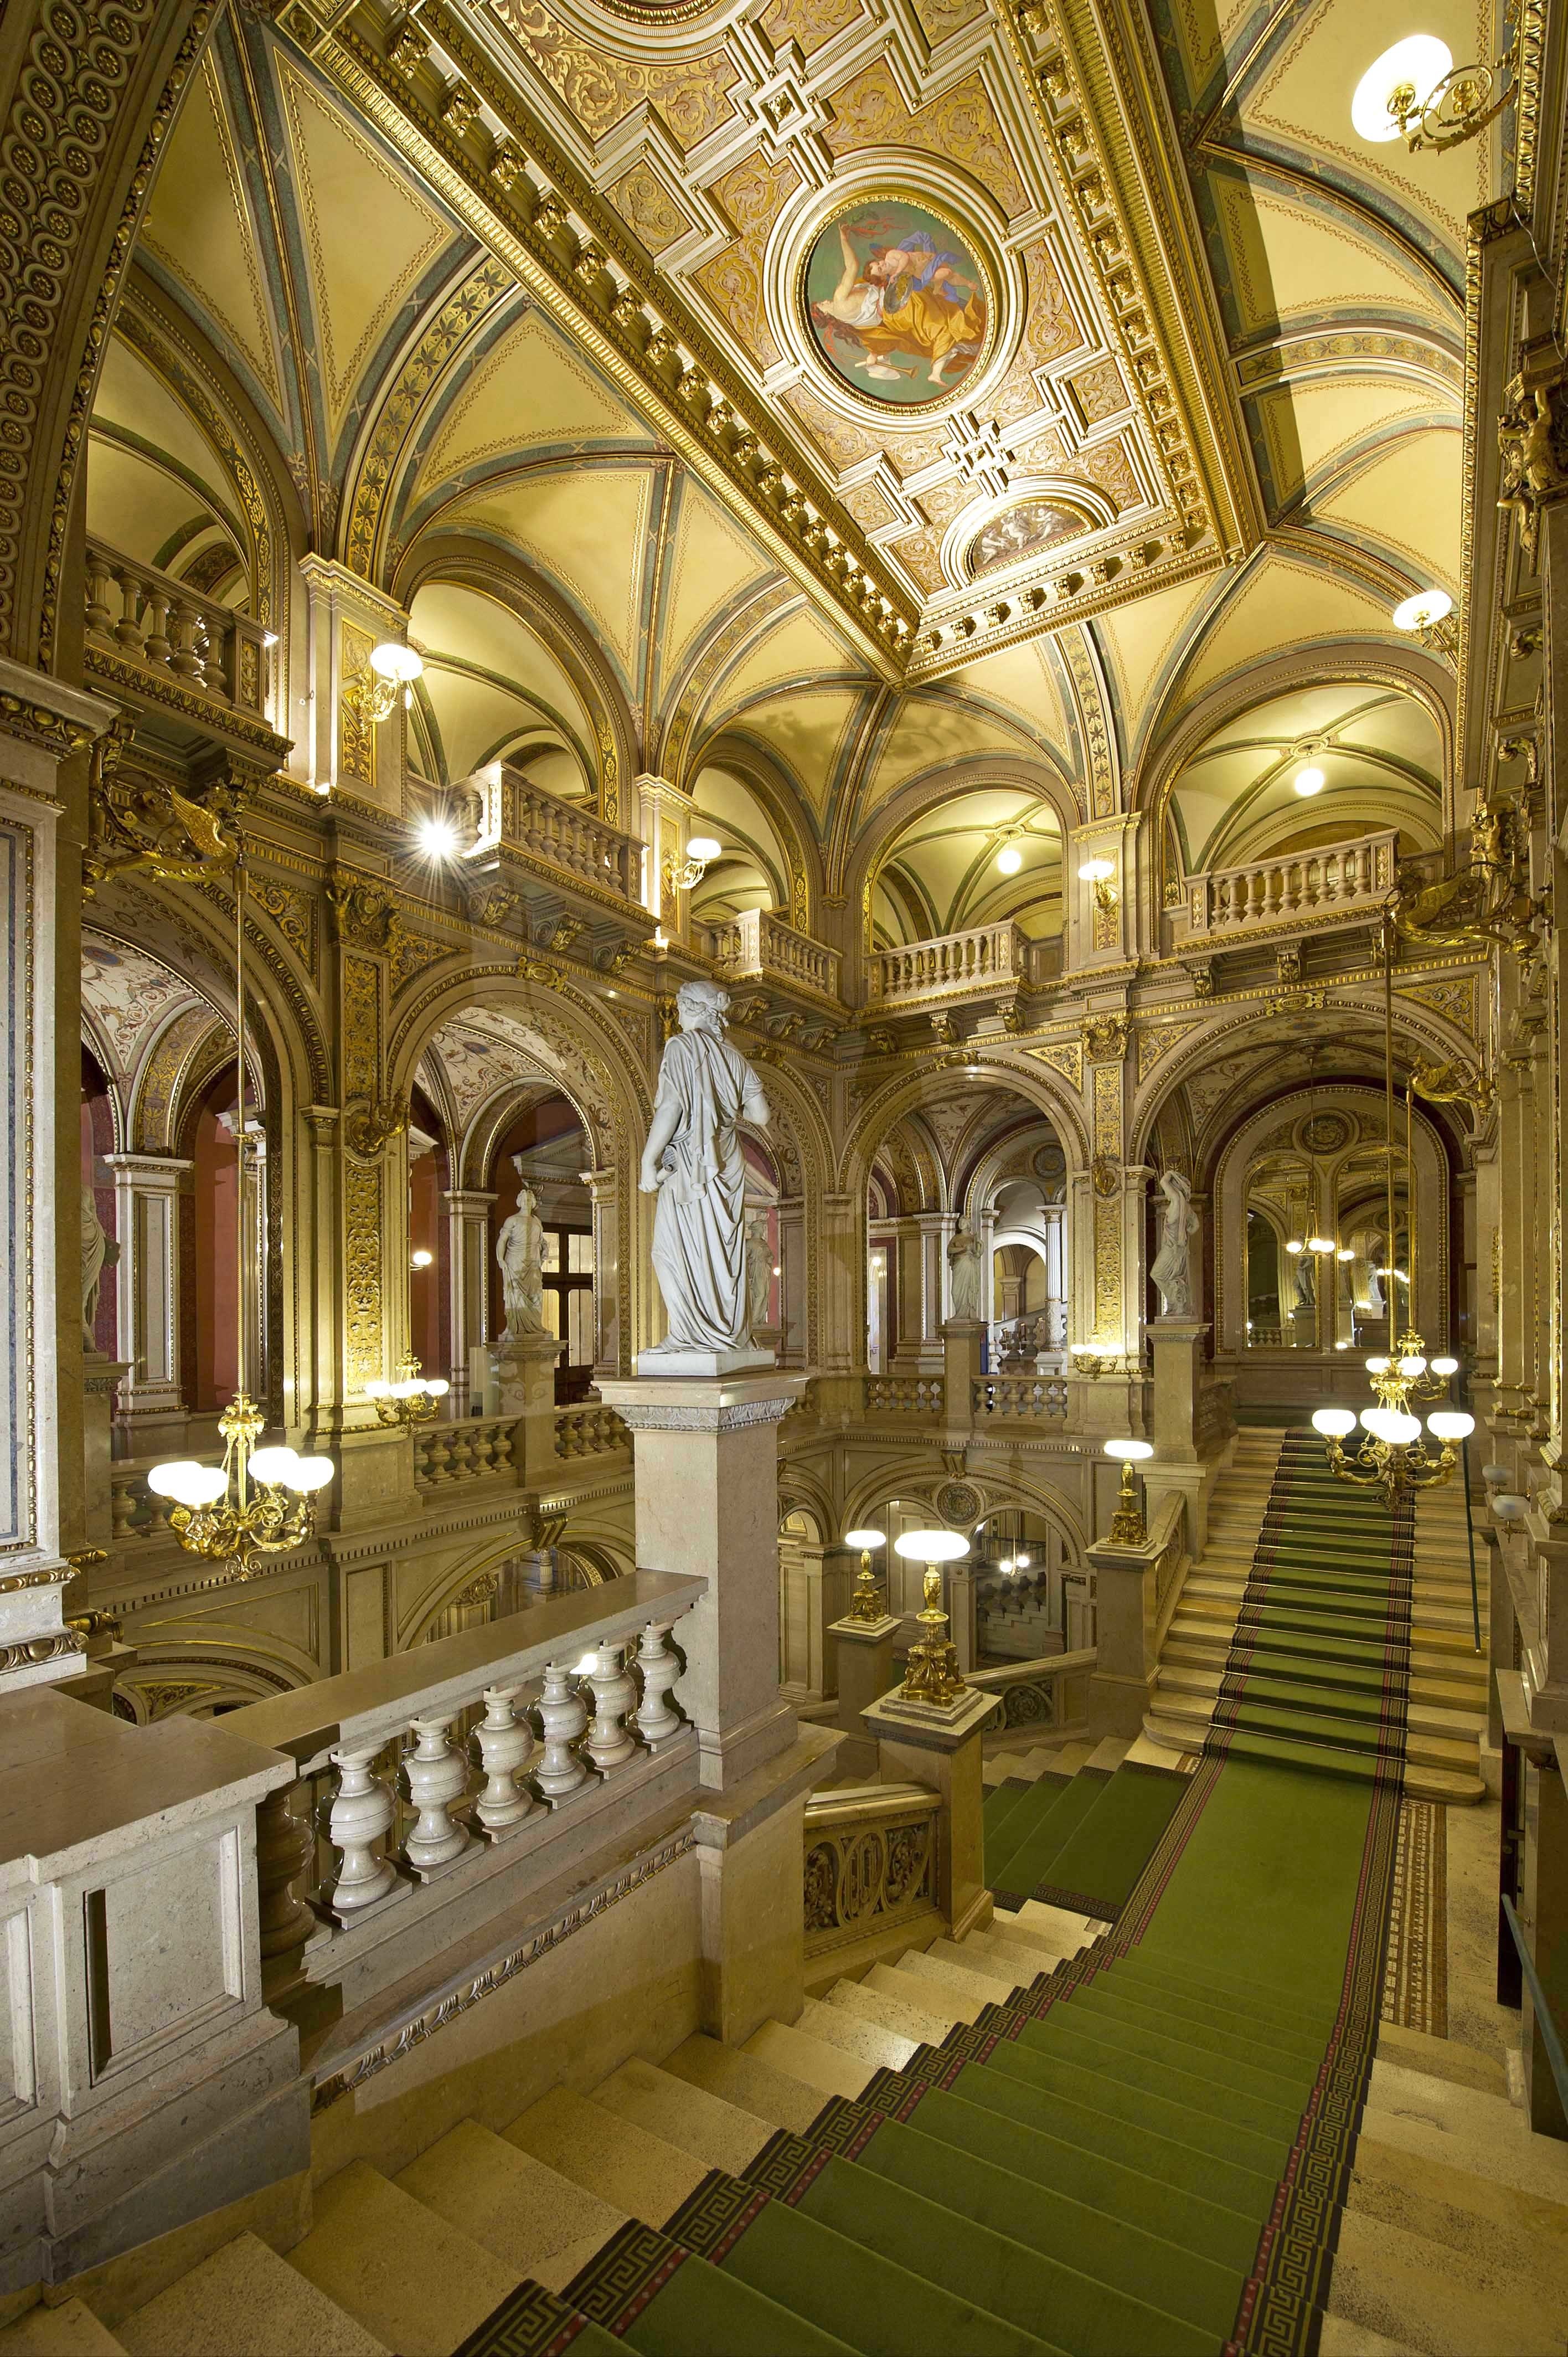 Венская государственная опера в Австрии